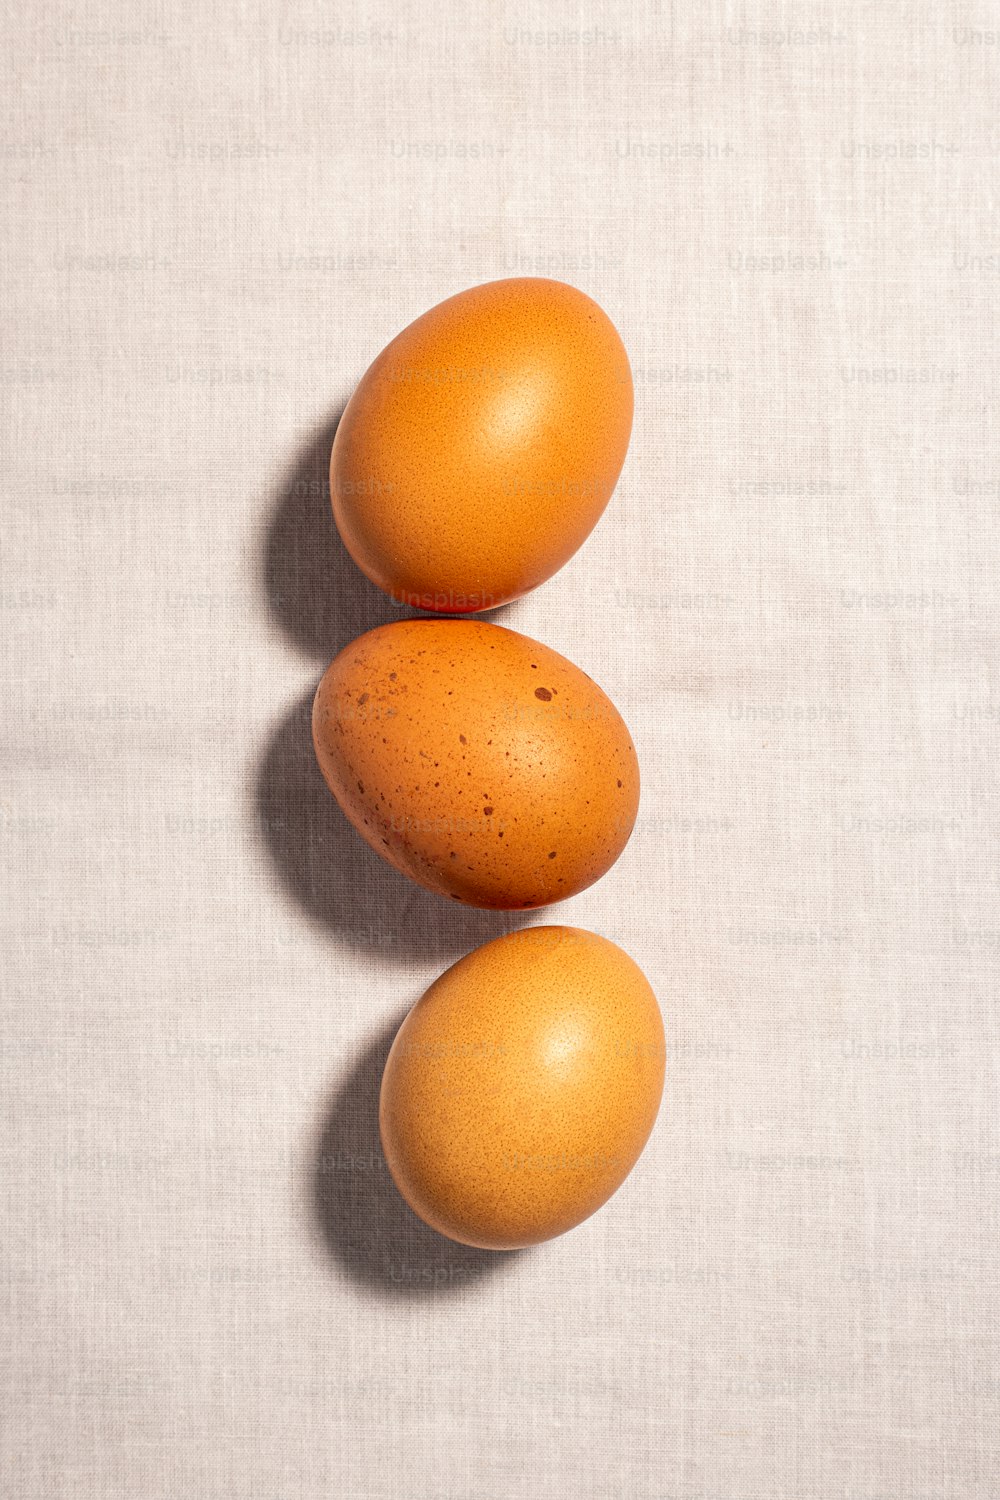 Tres huevos marrones sentados uno encima del otro